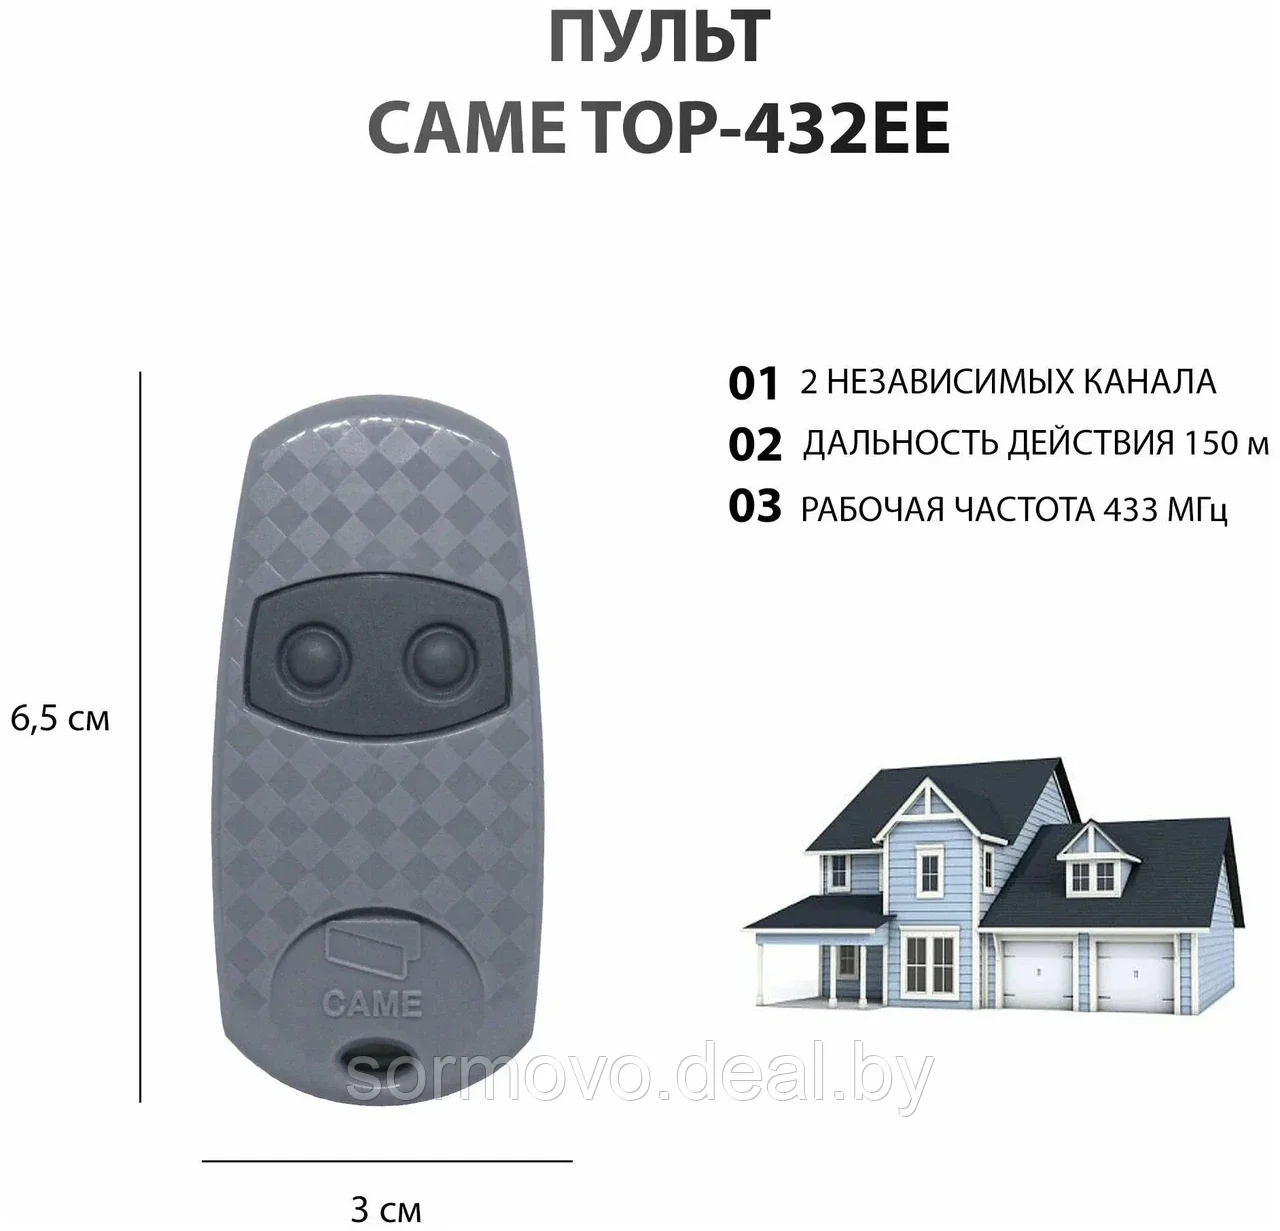 CAME TOP 432 EE 2 кнопки, 2-х канальный серый 433 Mhz, пульт д/у